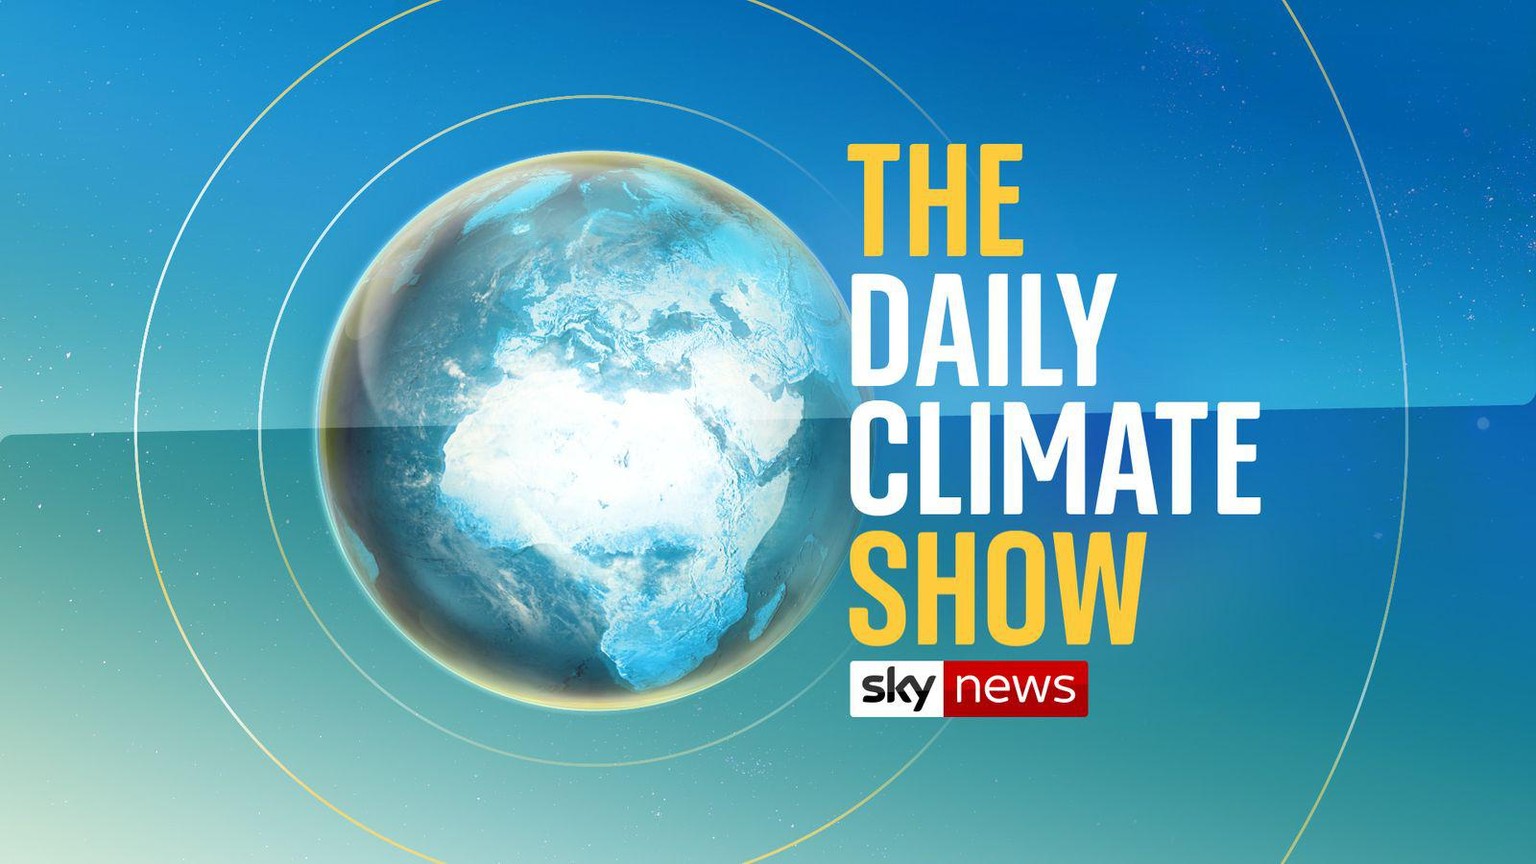 Vorbild für SRF? Ab dem 7. April wird die Daily Climate Show täglich zur besten Sendezeit ausgestrahlt.